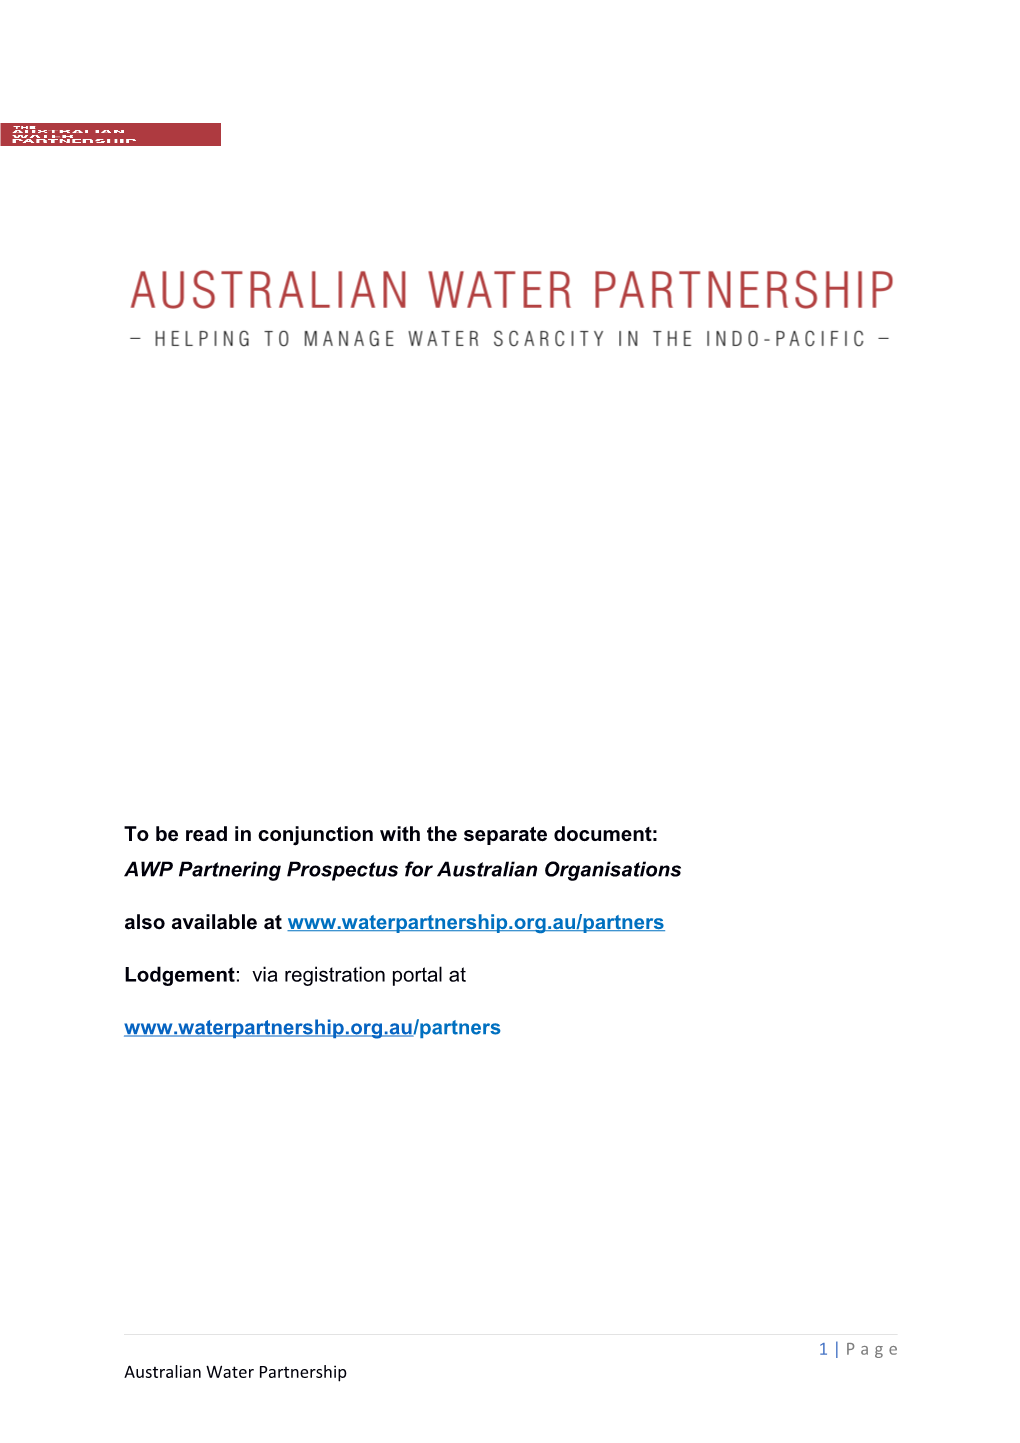 AWP Partnering Prospectus for Australian Organisations